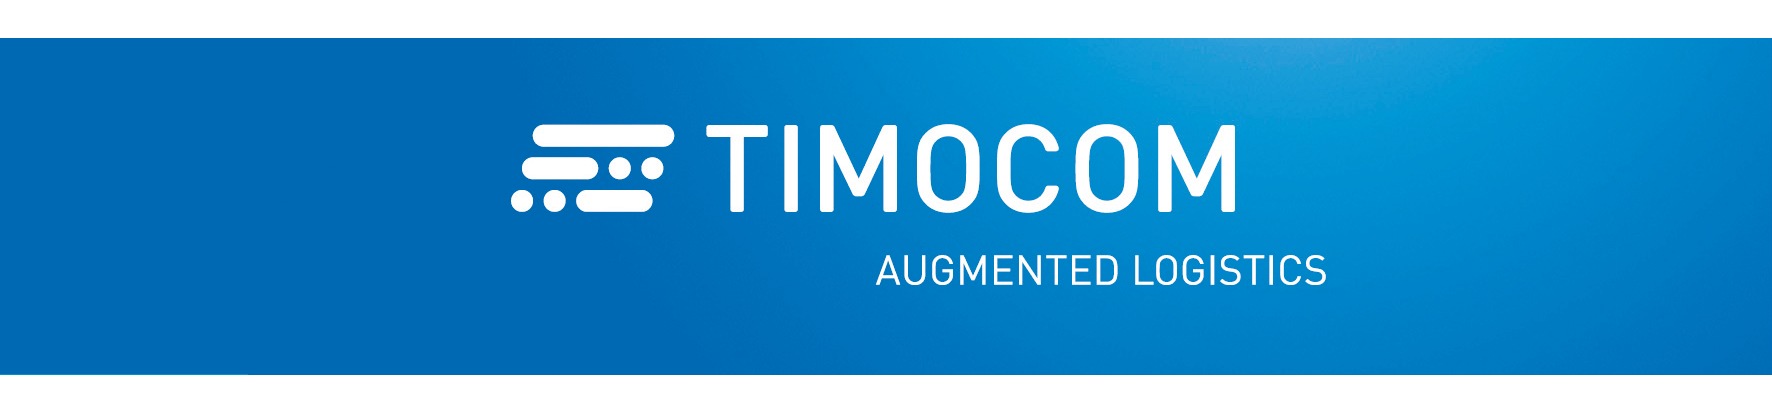 TIMOCOM präsentiert umfassendes System aus neuen Smart Apps für die Logistik